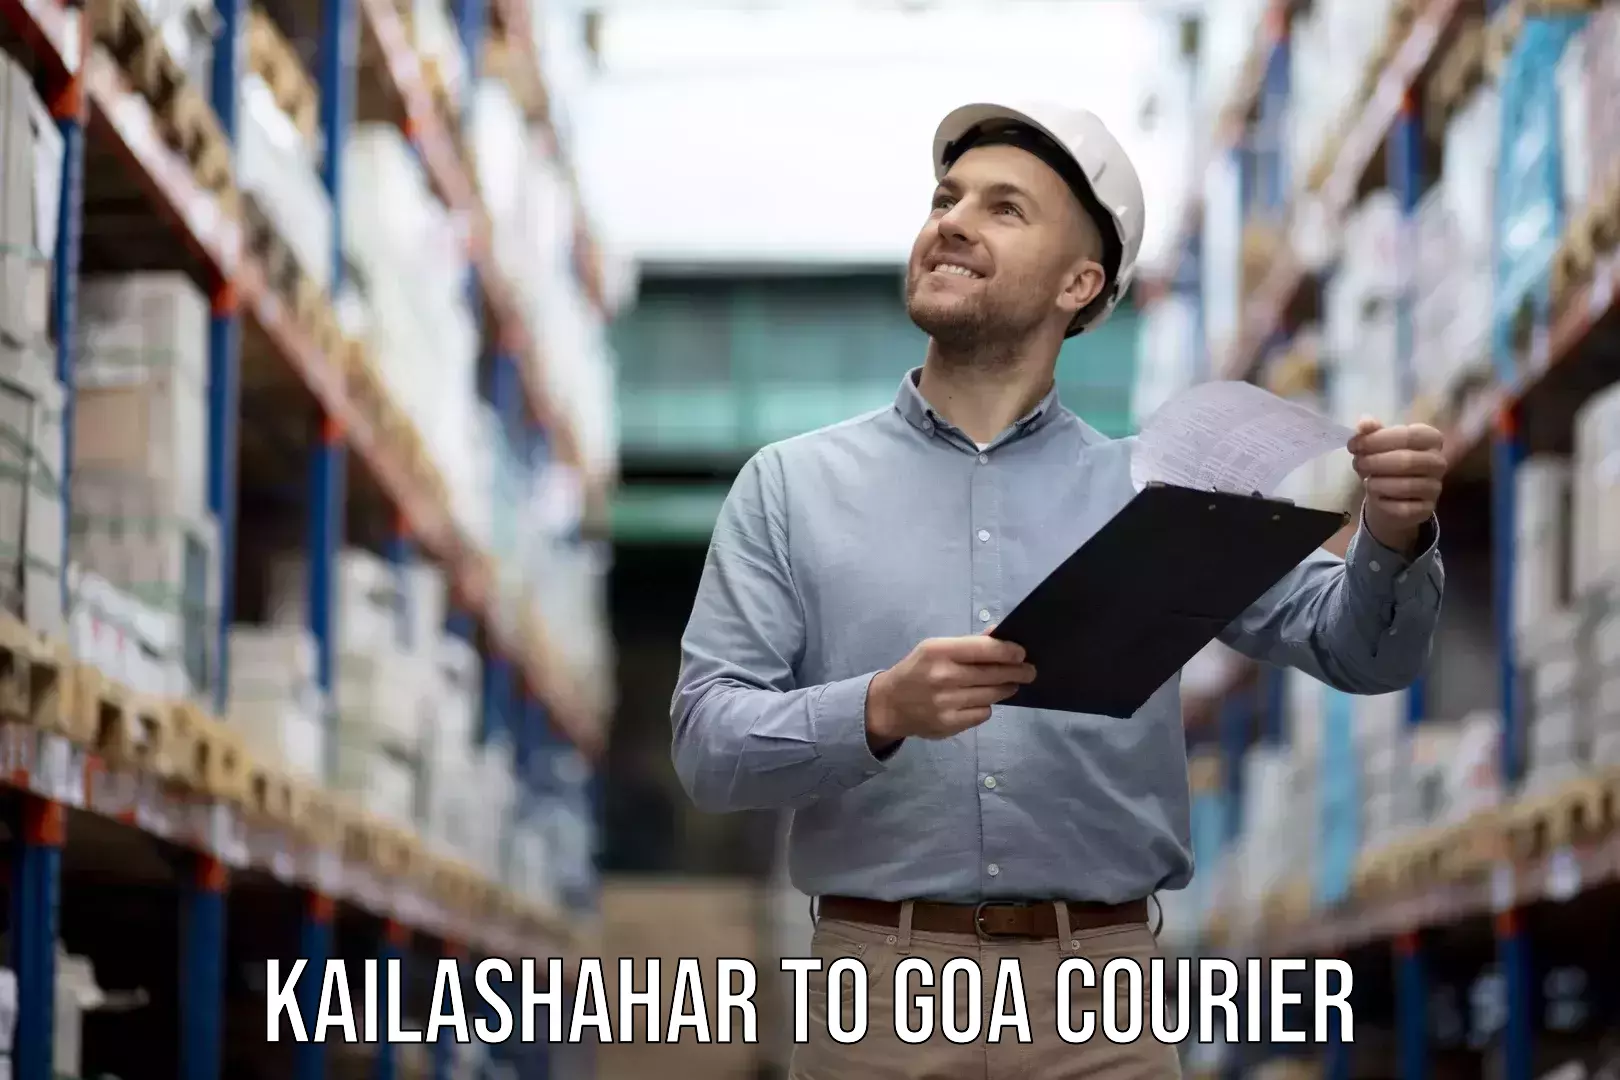 Professional furniture movers Kailashahar to Goa